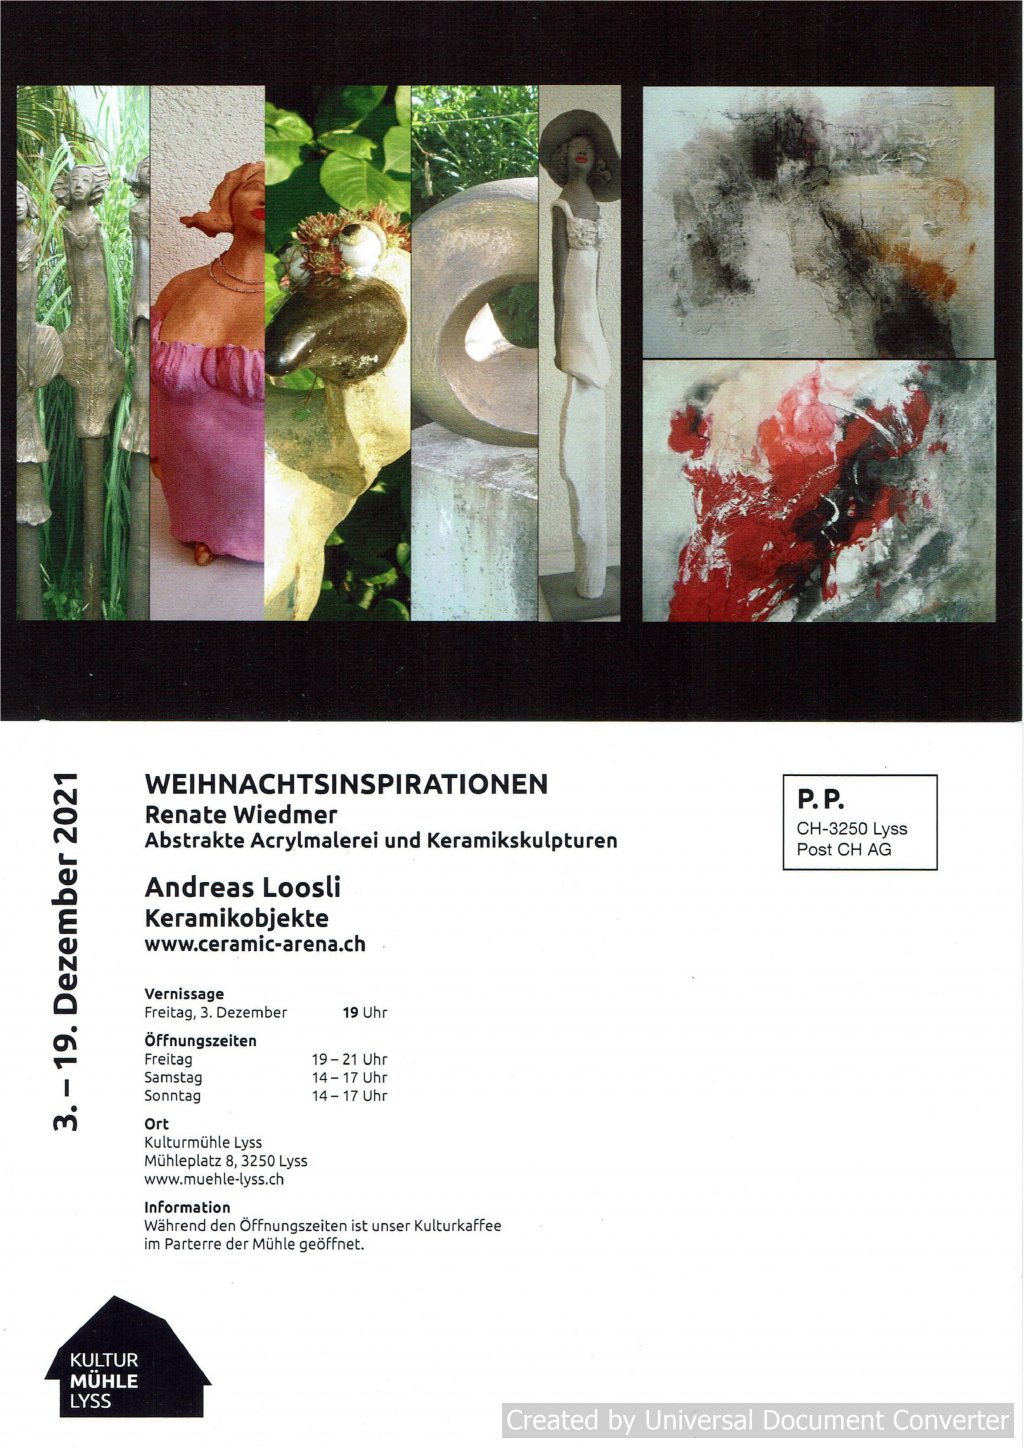 image-11547470-Flyer_Ausstellung_Kulturmühle_Lyss_jpeg-e4da3.w640.jpg